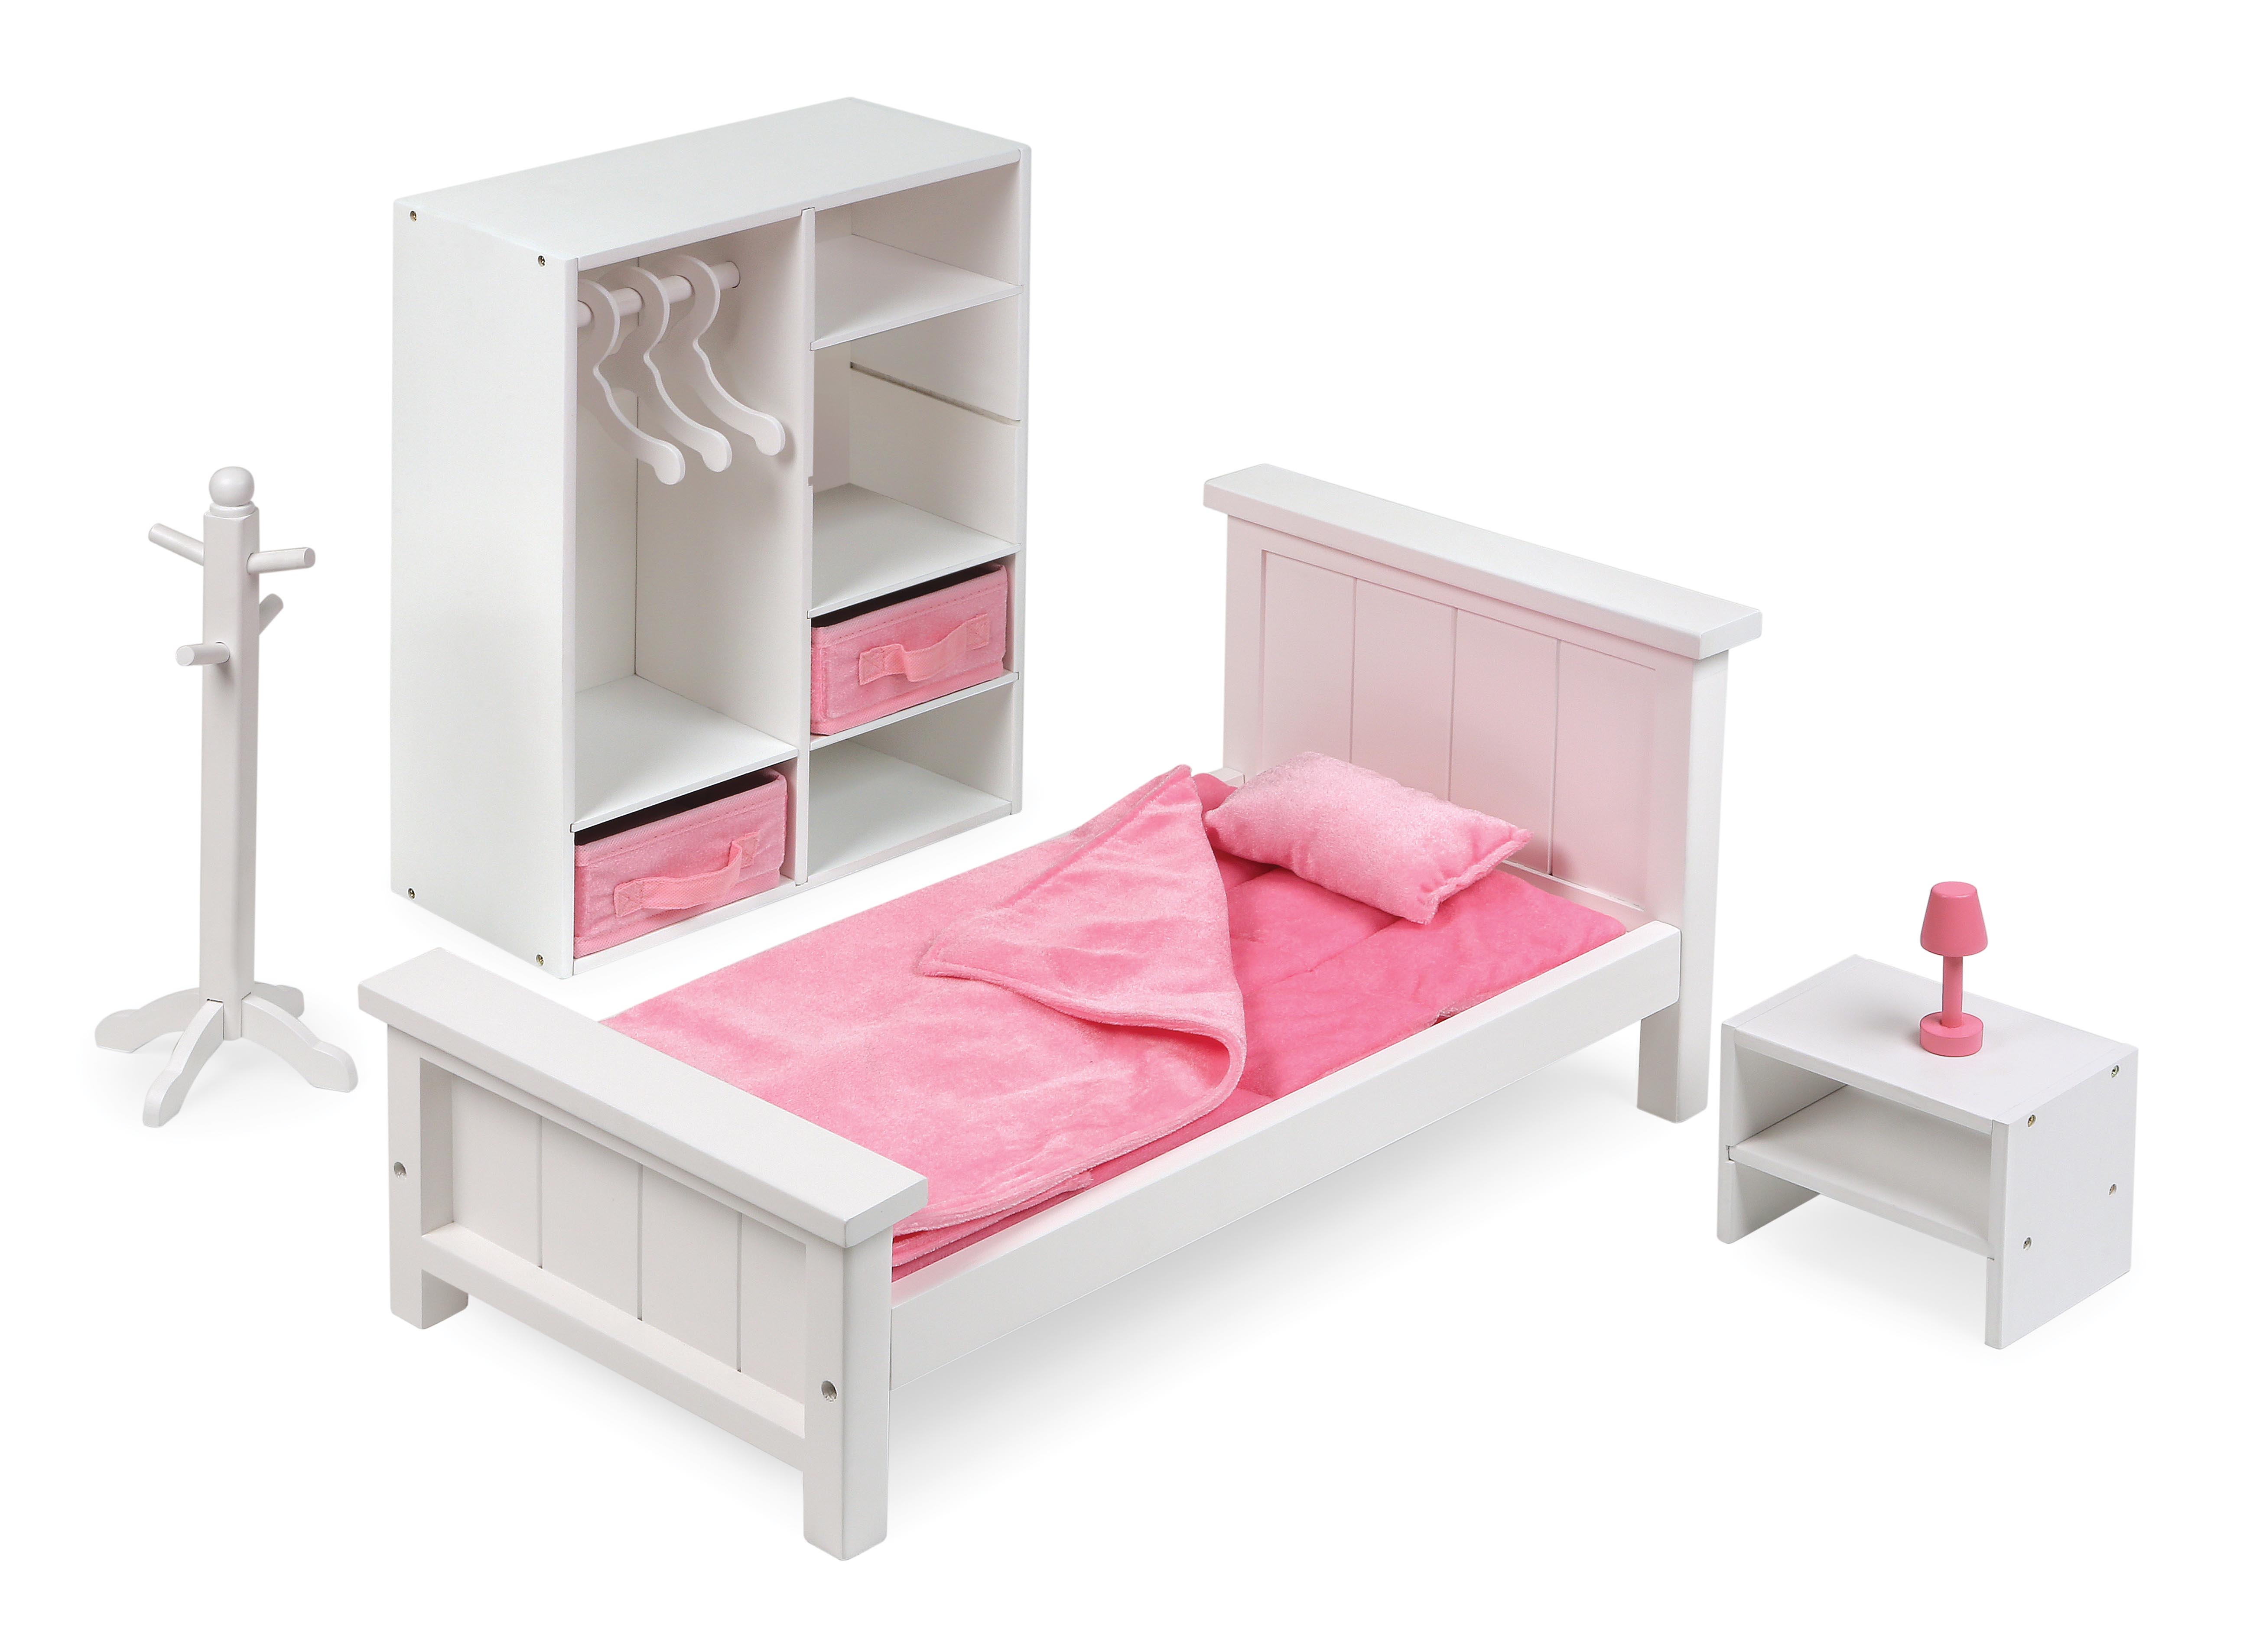 Bedroom Furniture Set for 18 inch Dolls - White/Pink